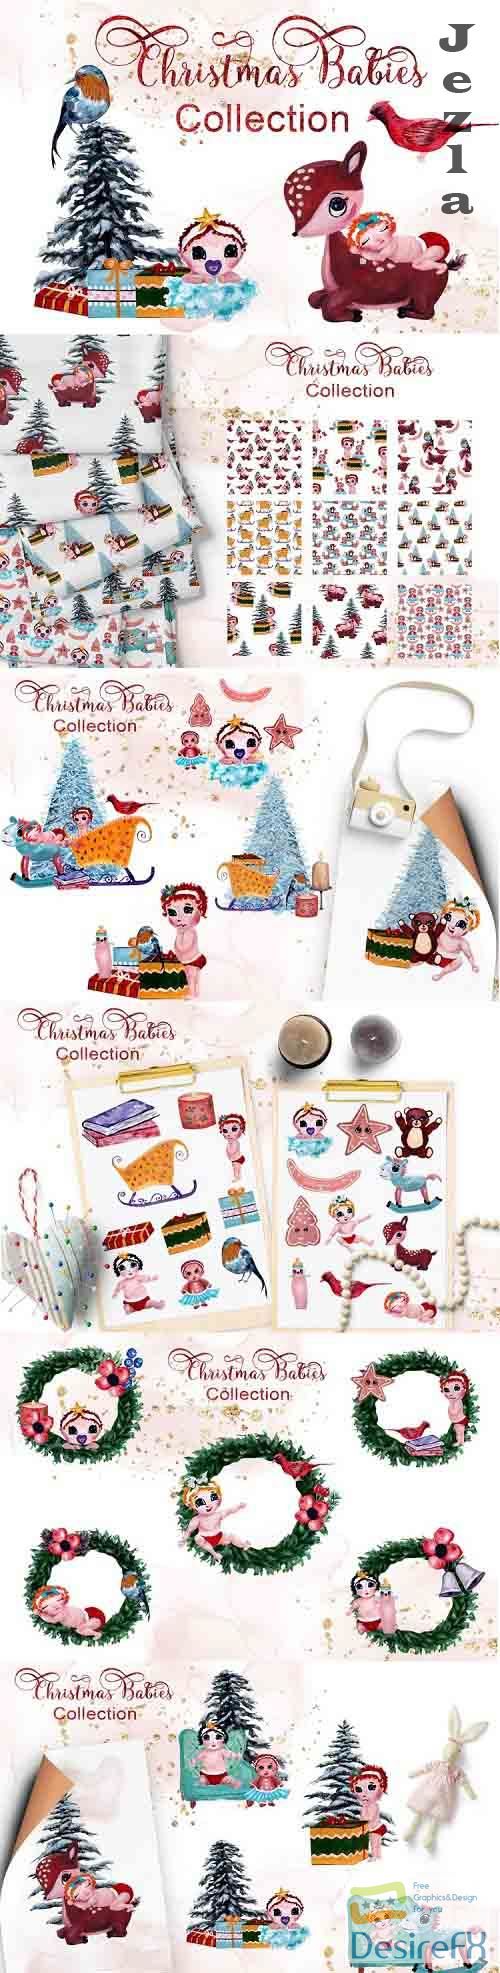 Christmas Babies Collection - 1055651